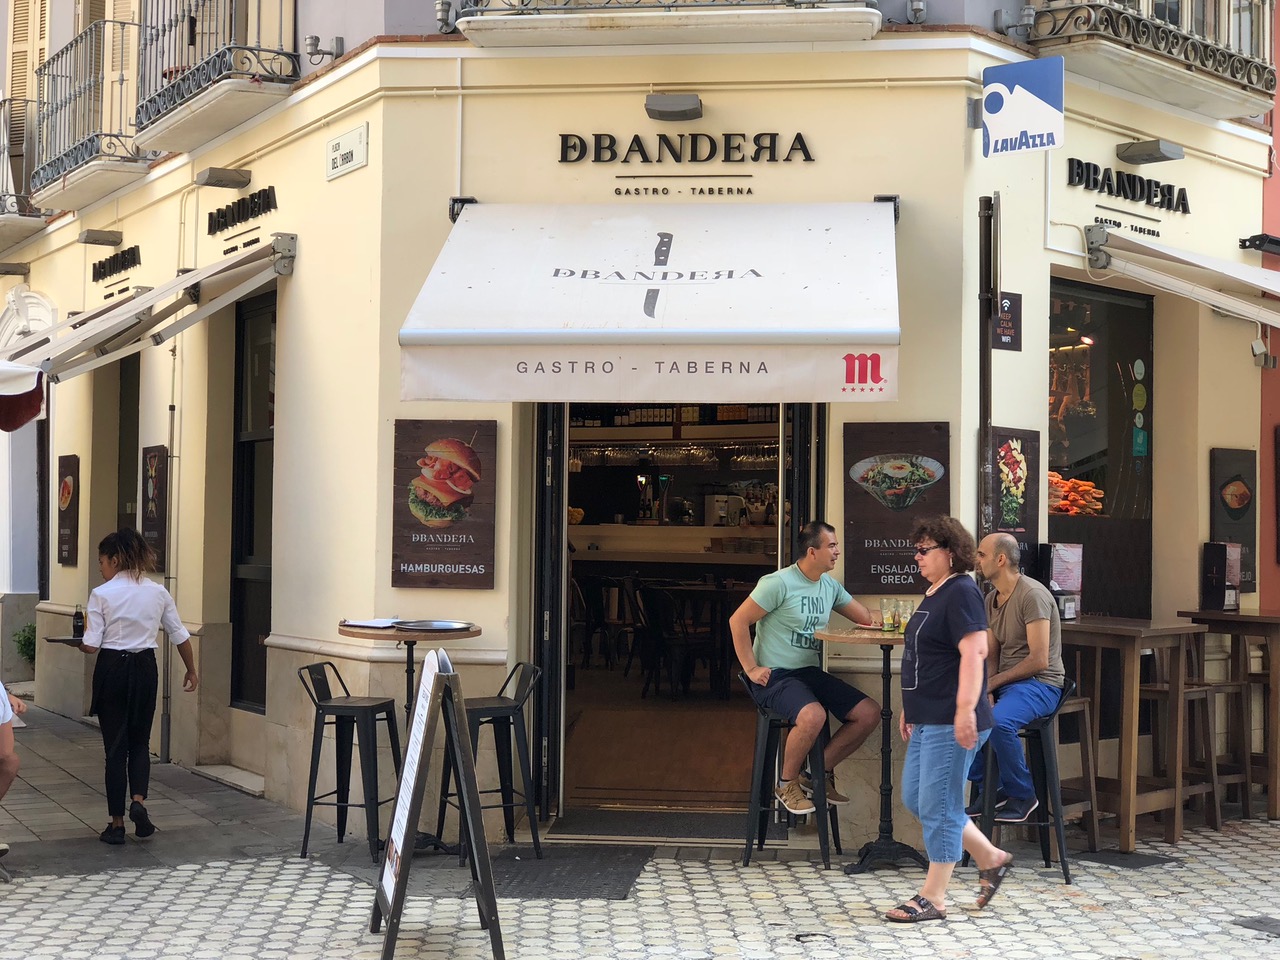 Localización comercial de la taberna DBandera en Málaga, en la plaza del Carbón